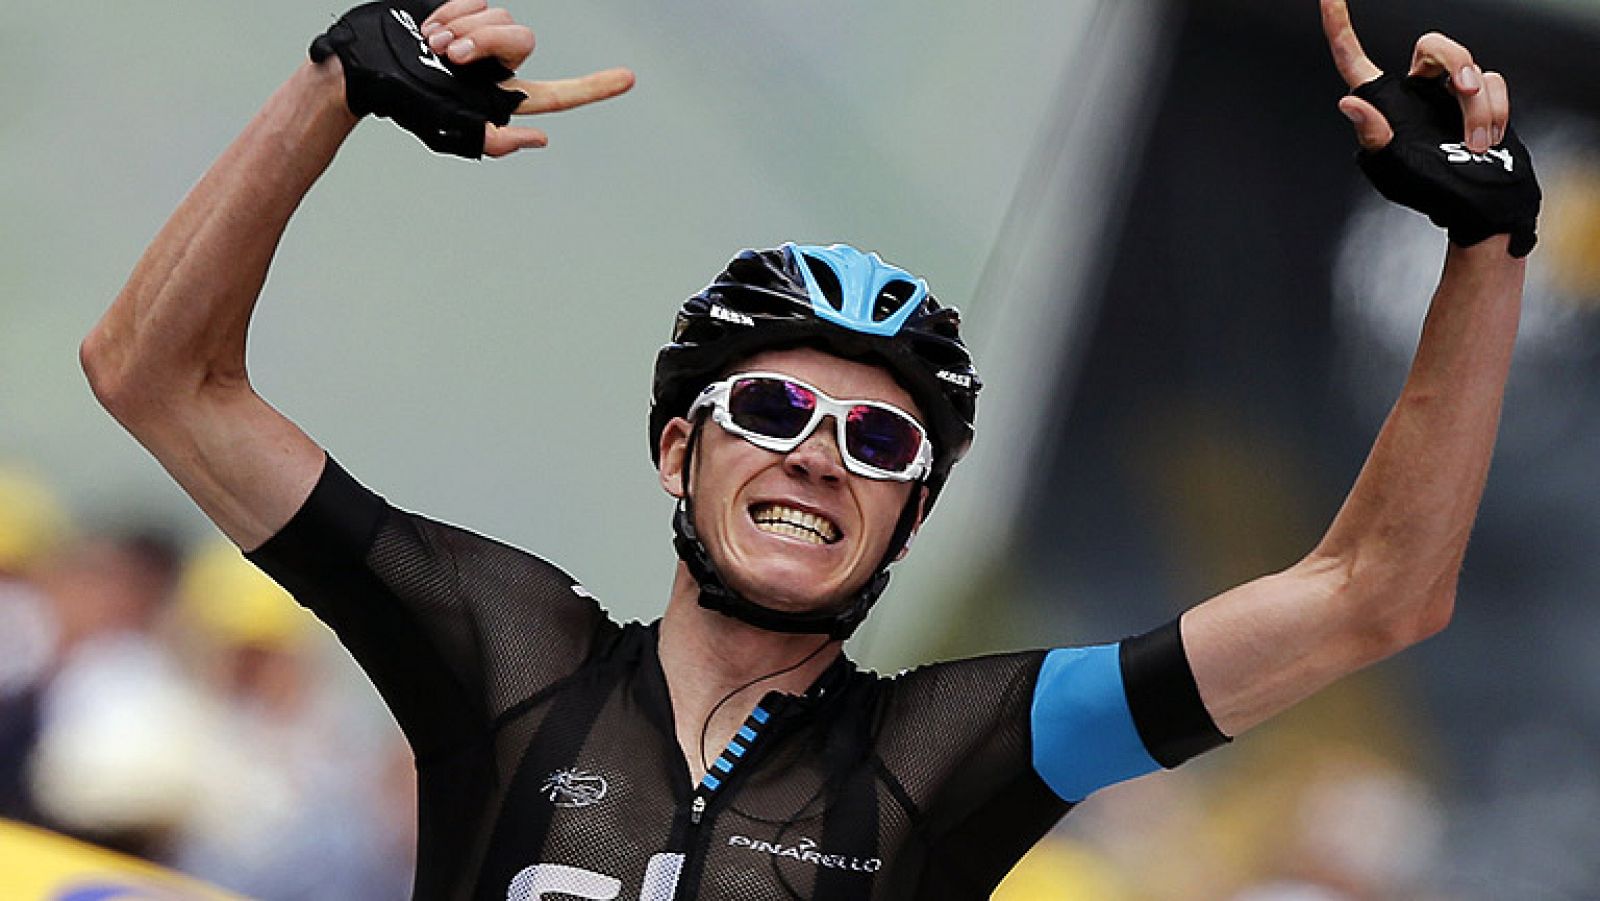 El líder del Sky y máximo favorito al triunfo final del Tour, Chris Froome, ha dado una exhibición en la primera etapa montañosa de la carrera y se ha colocado líder, abriendo diferencias con el resto de favoritos.